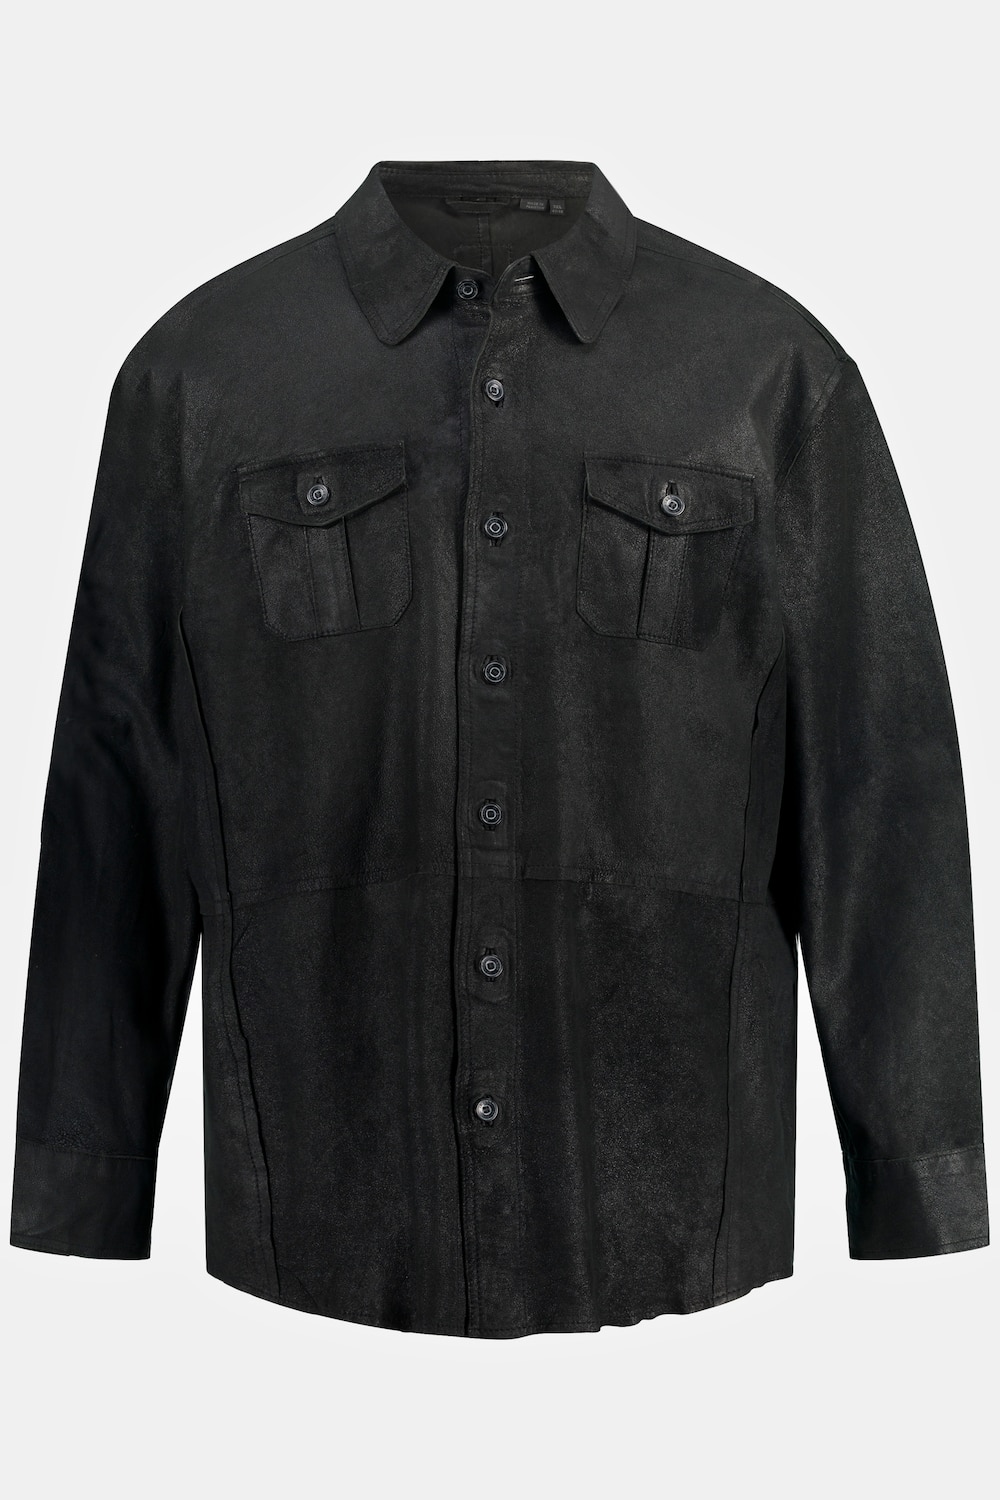 Lederhemd, Große Größen, Herren, schwarz, Größe: 6XL, Leder, JP1880